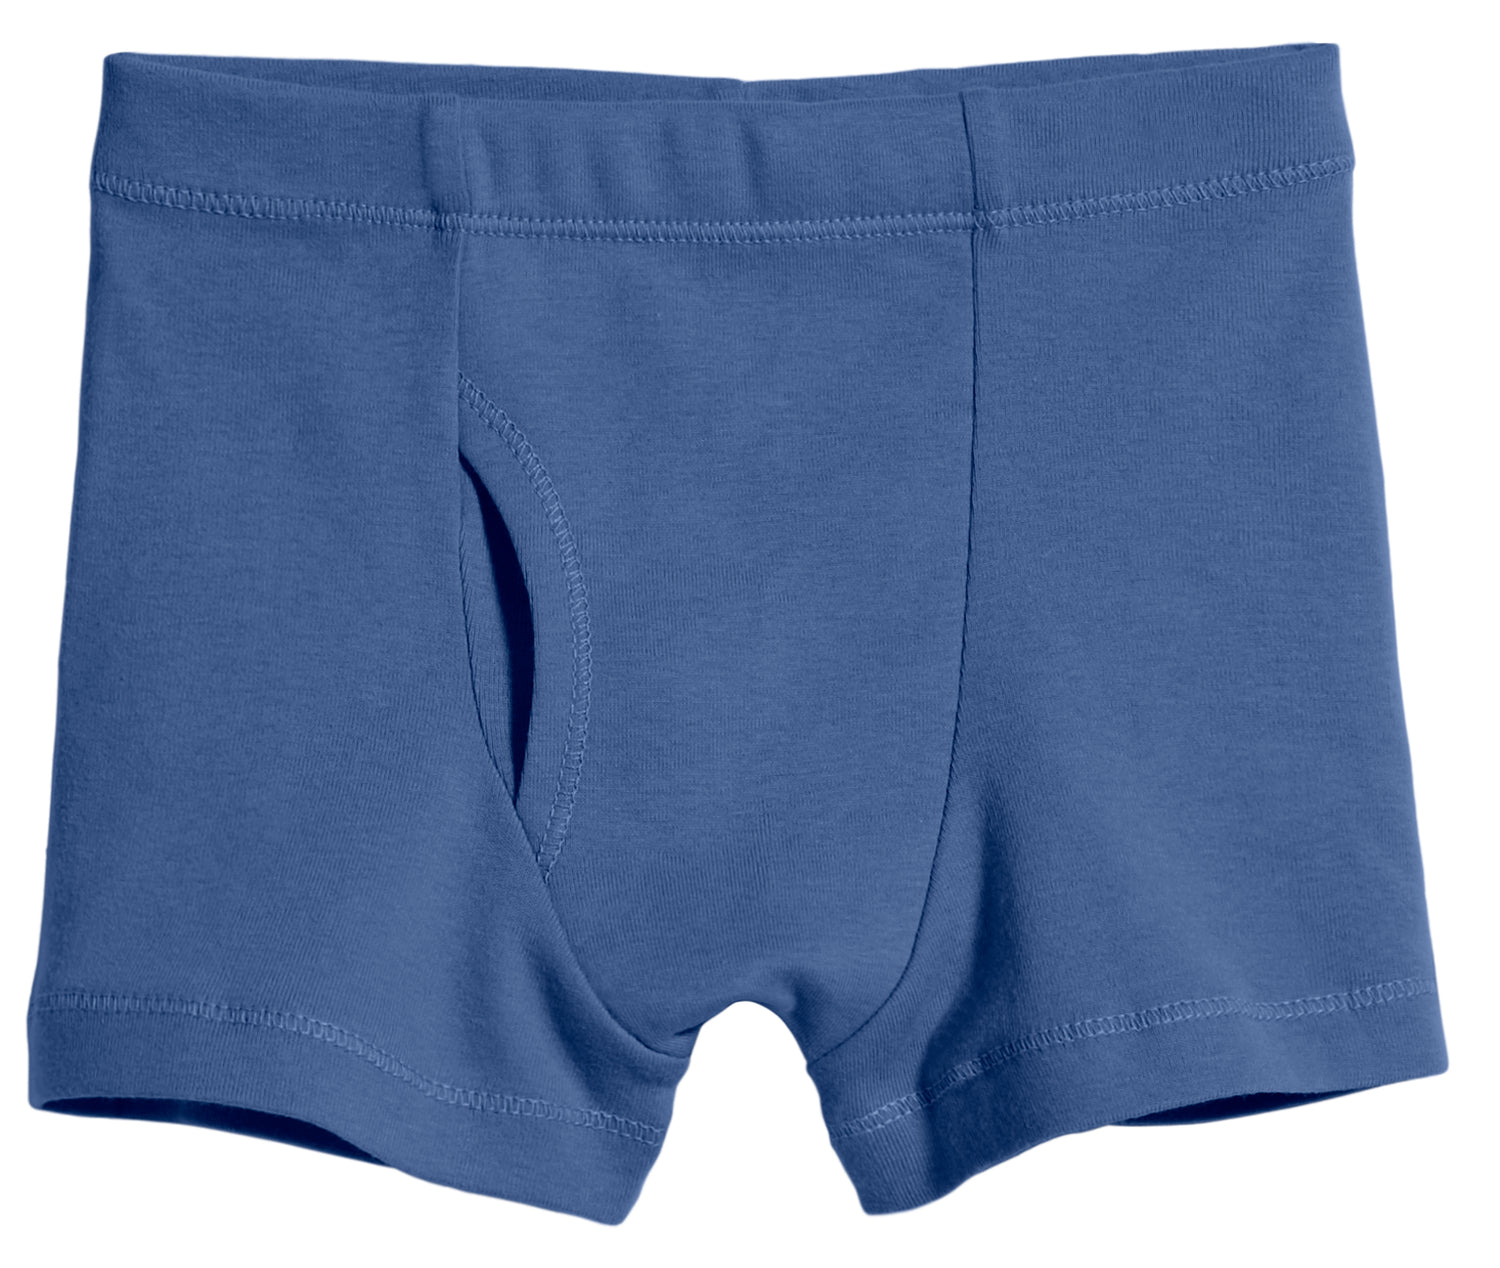 PJ Masks Boy's 5-Pack Briefs Underwear - Size 6